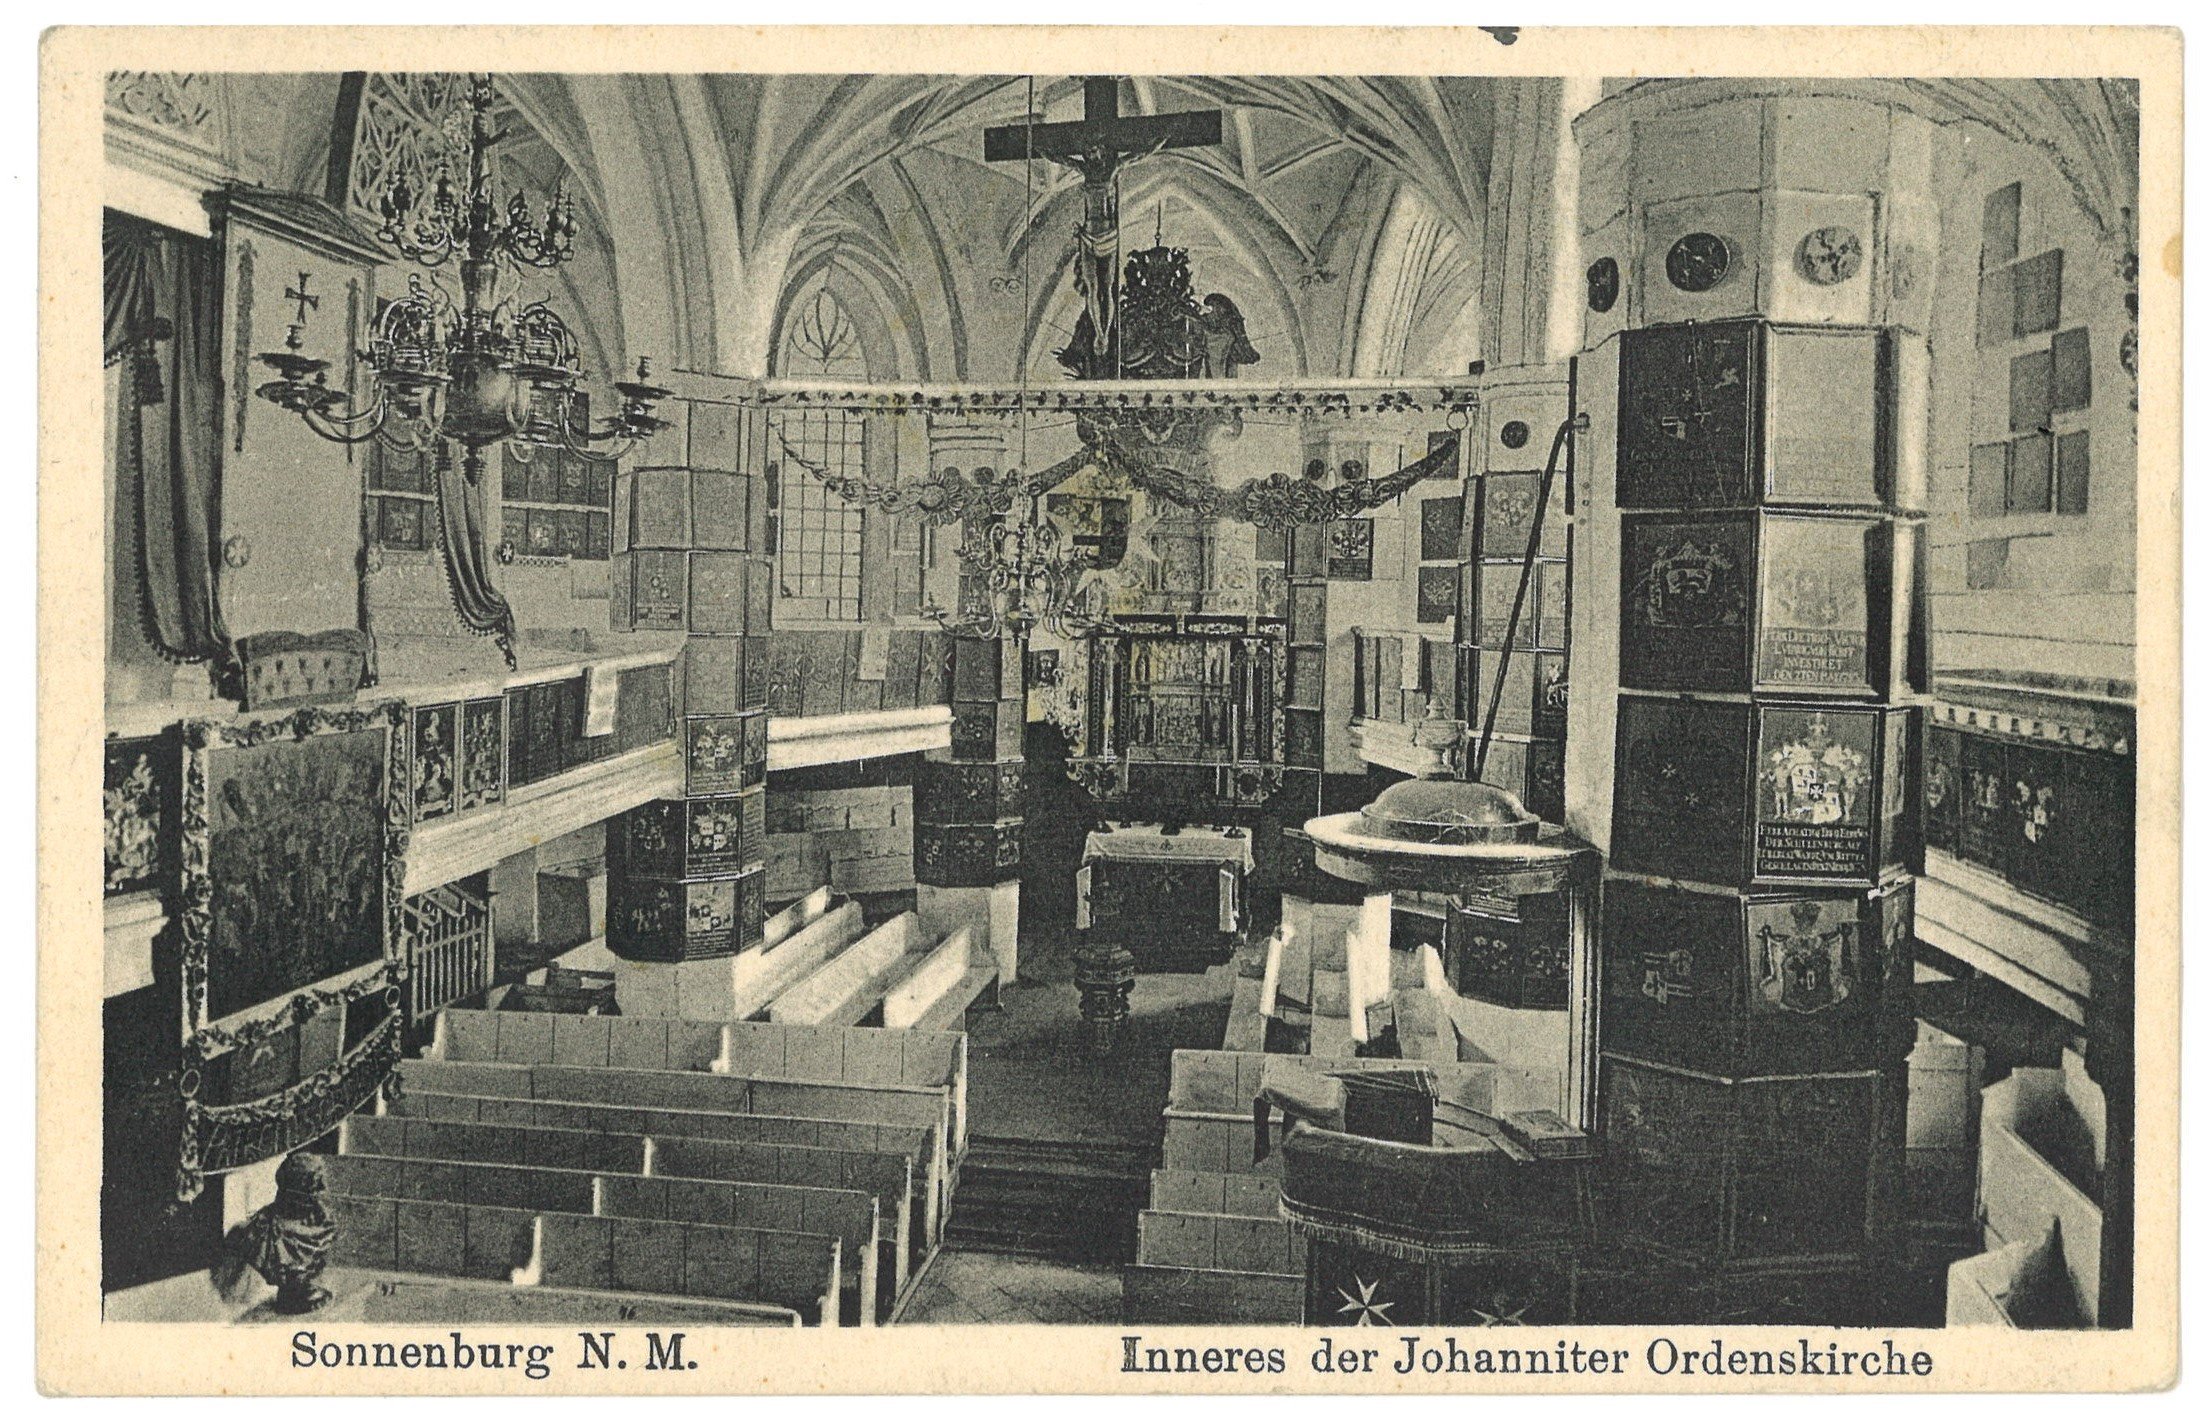 Sonnenburg (Neumark) [Słońsk]: Inneres der Johanniterordenskirche (Landesgeschichtliche Vereinigung für die Mark Brandenburg e.V., Archiv CC BY)